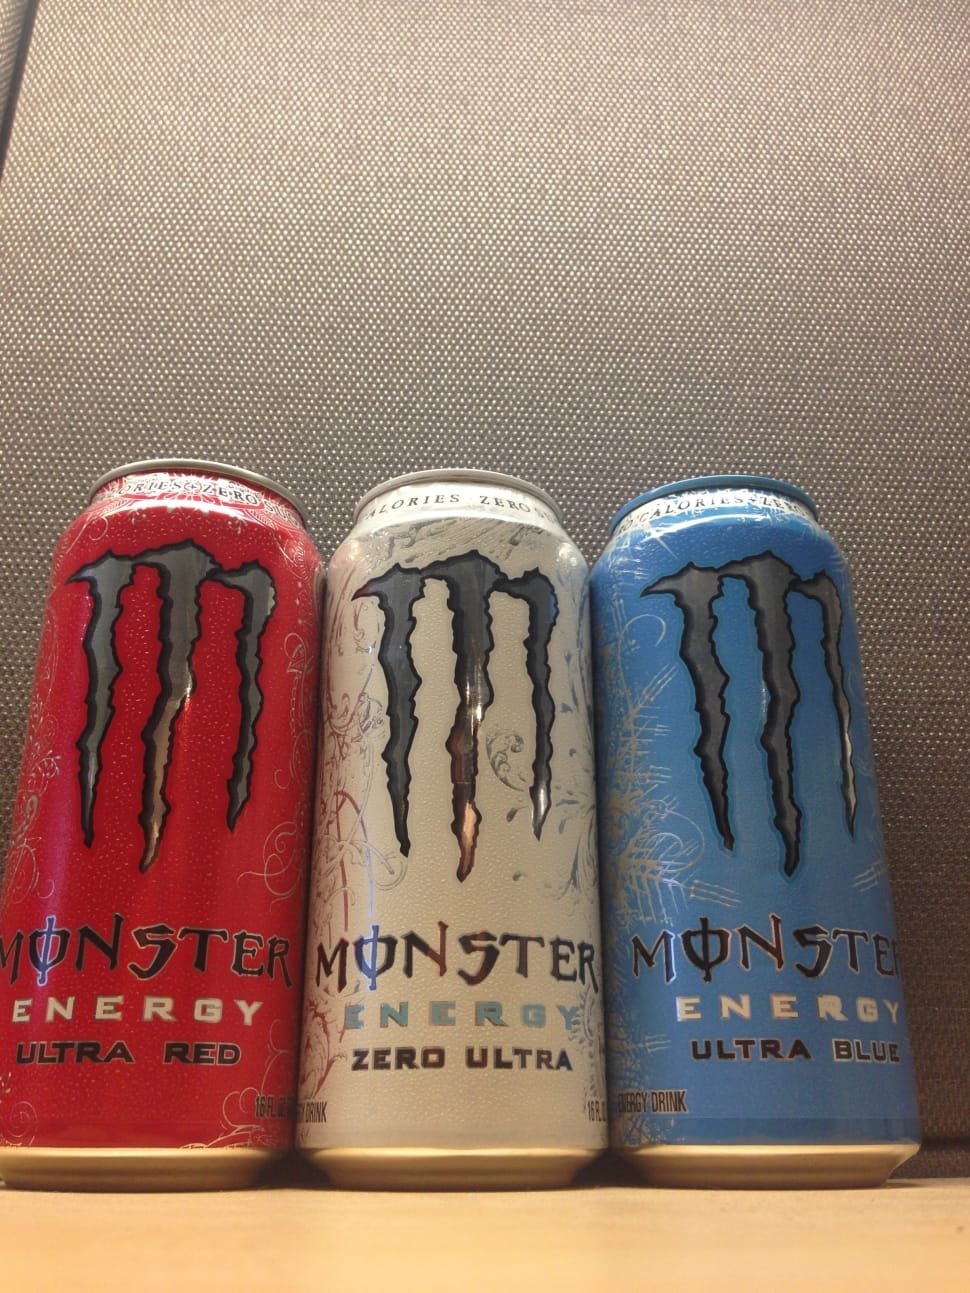 3 Monster Energy Energy Drink Preview - Monster Energy - HD Wallpaper 